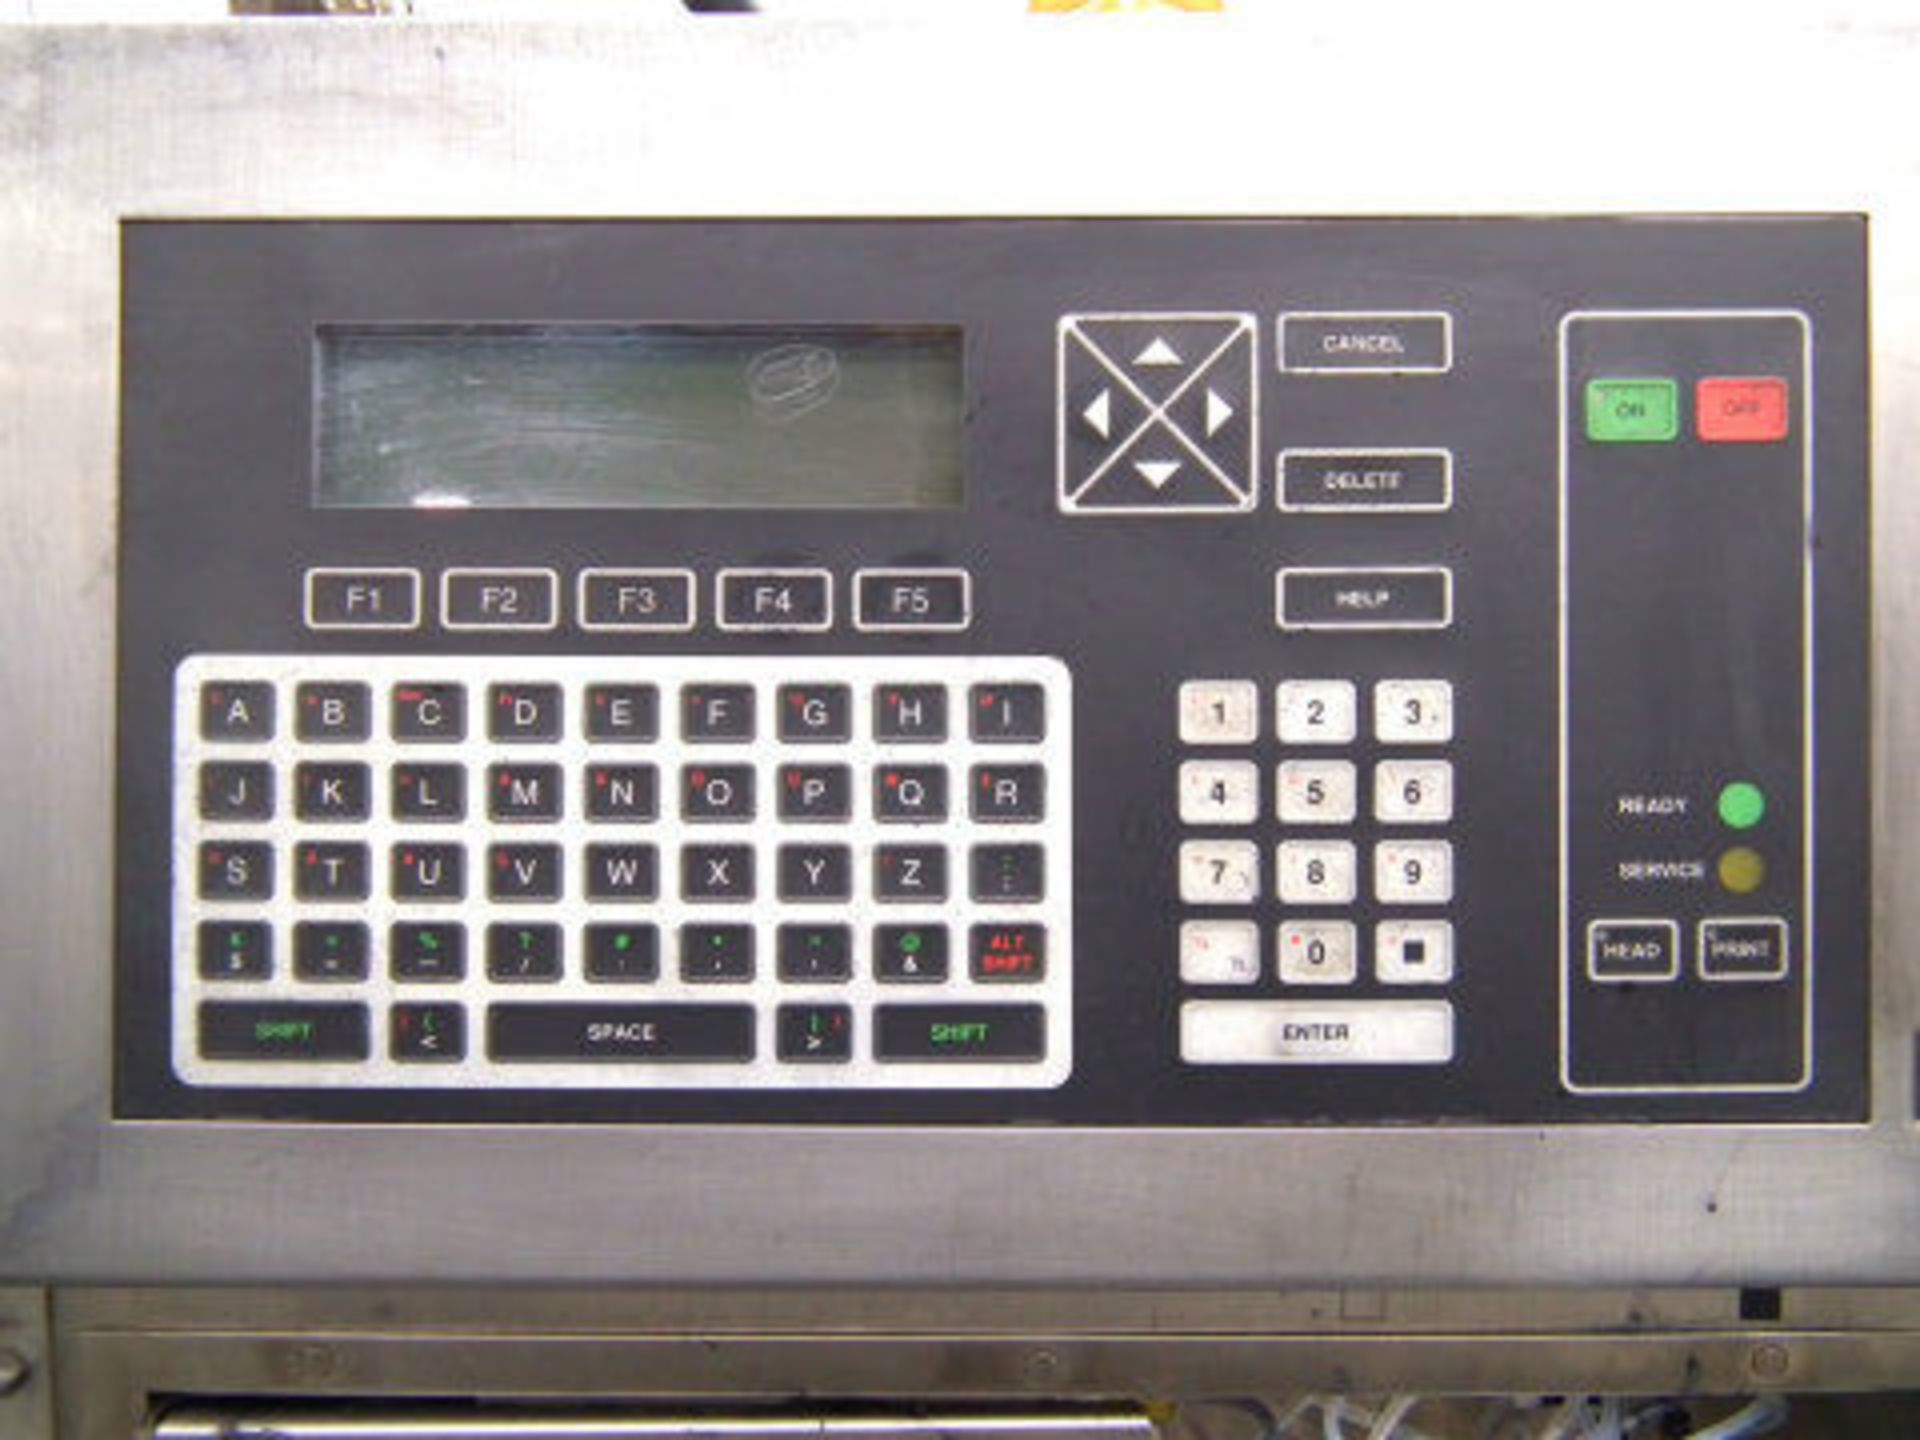 VideoJet Model 170i Ink Date Coding System A4261 - Image 6 of 10